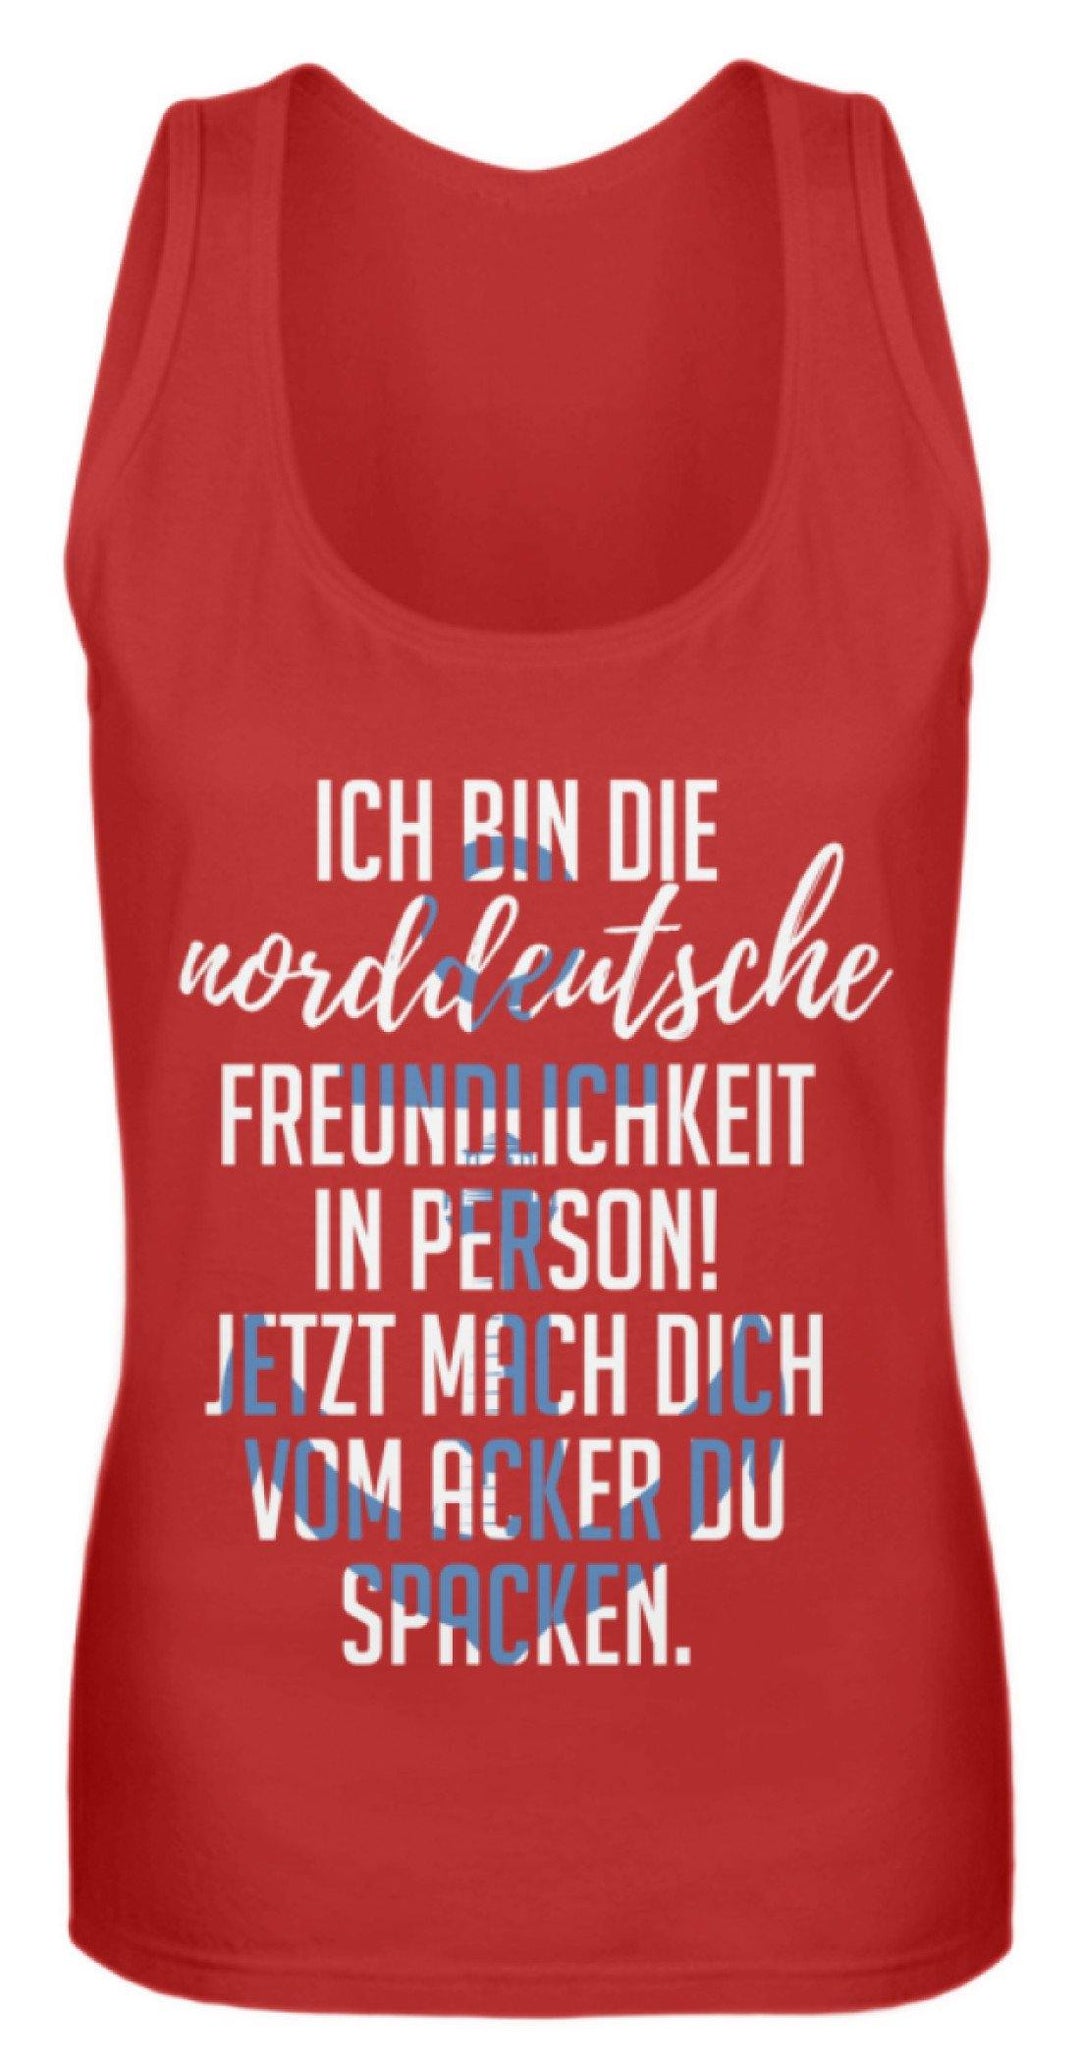 Norddeutsche Freundlichkeit  - Frauen Tanktop - Words on Shirts Sag es mit dem Mittelfinger Shirts Hoodies Sweatshirt Taschen Gymsack Spruch Sprüche Statement